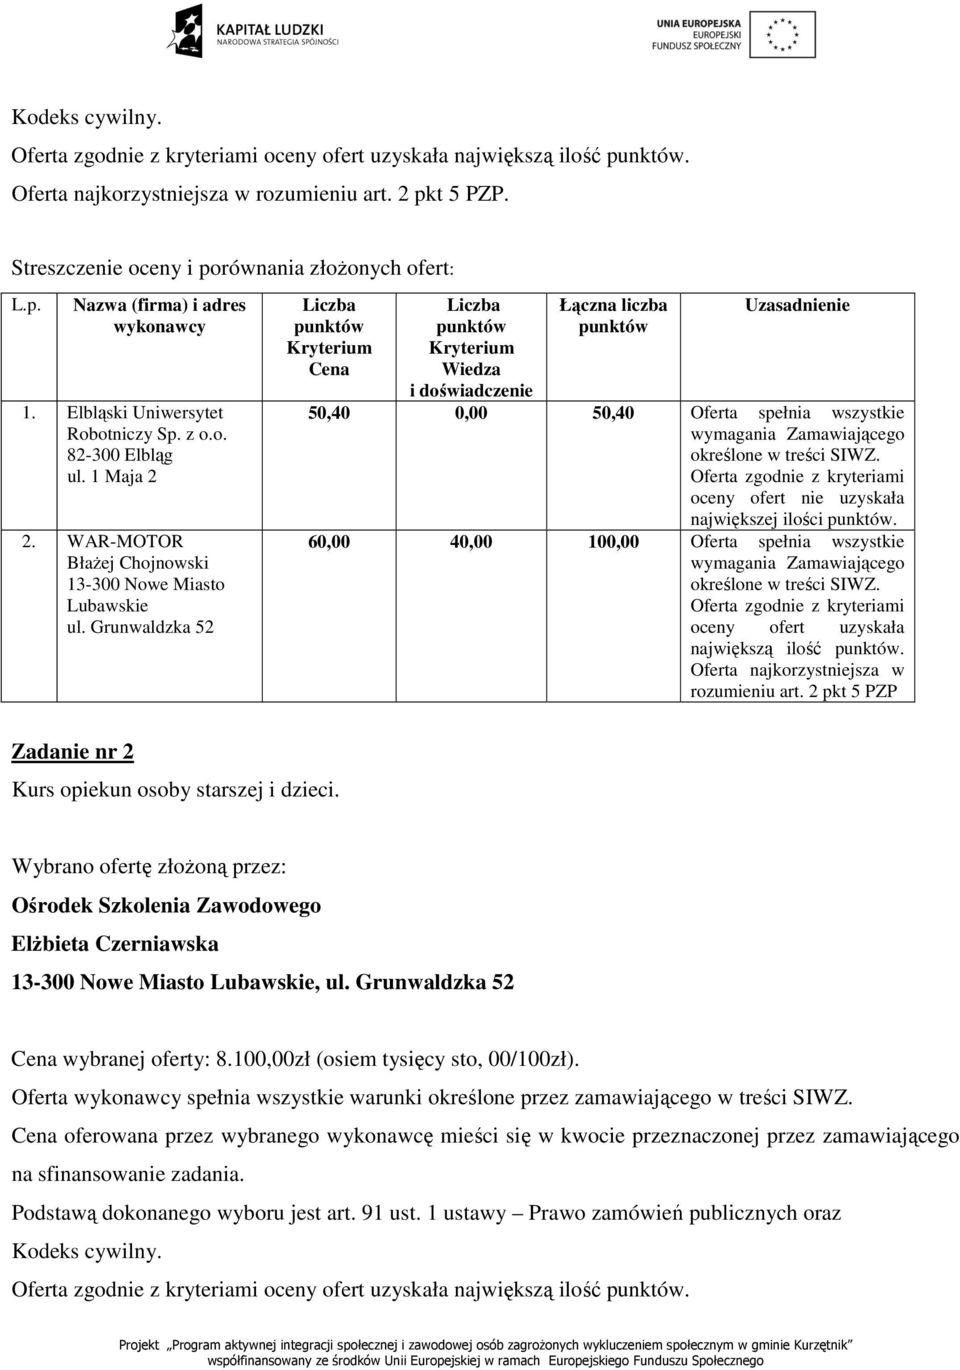 Ośrodek Szkolenia Zawodowego, wybranej oferty: 8.100,00zł (osiem tysięcy sto, 00/100zł).